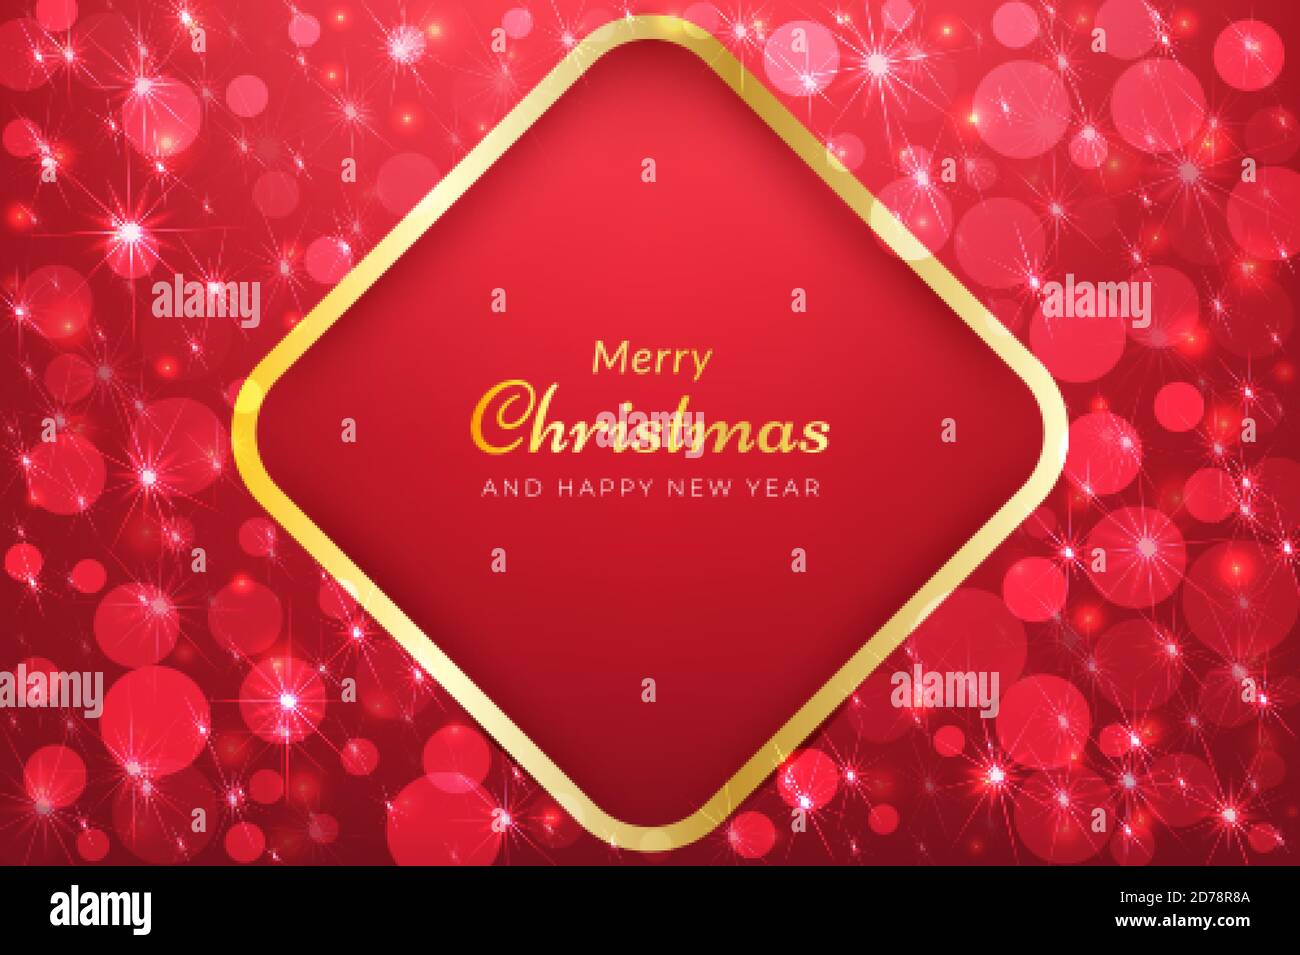 Rote weihnachten Hintergrund mit glitzernden Schnee-Effekt. Vektor-Design für Anzeigen, Banner, Grußkarten, Social-Media-Beiträge und mehr Stock Vektor